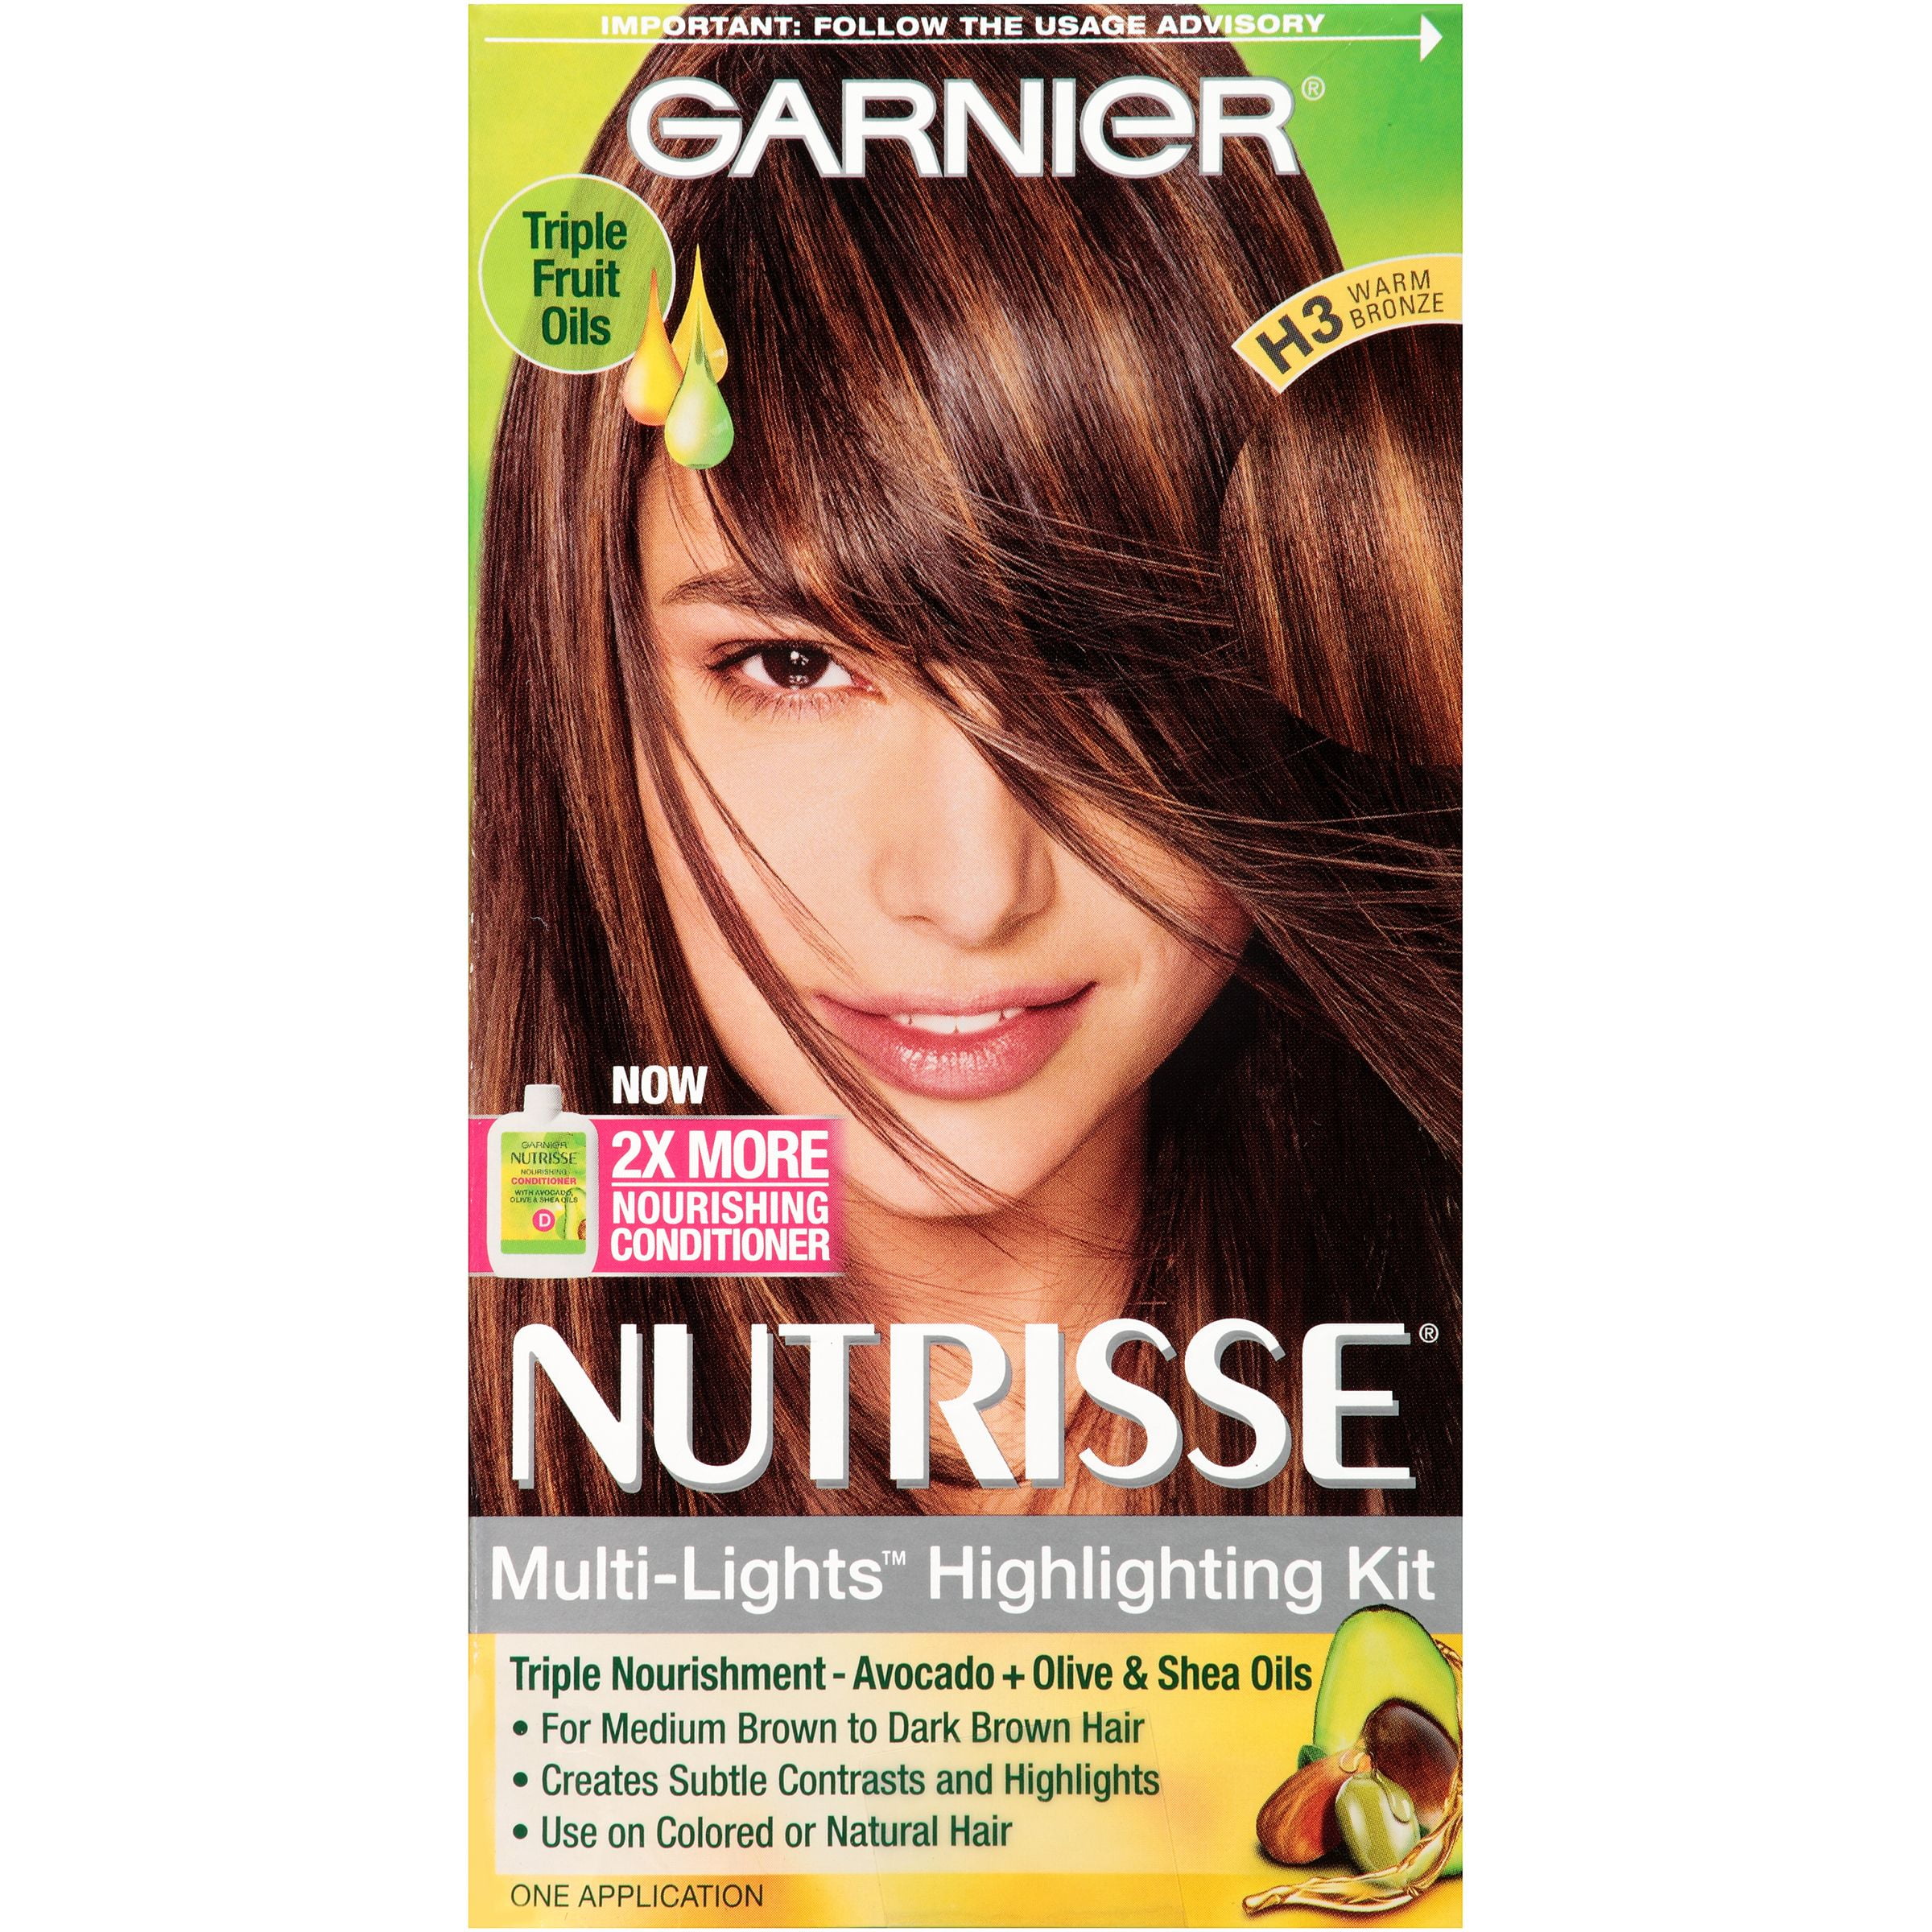 Garnier Nutrisse Nourishing Hair Color Creme (Highlighting Kit), H3 Warm  Bronze, 1 kit 